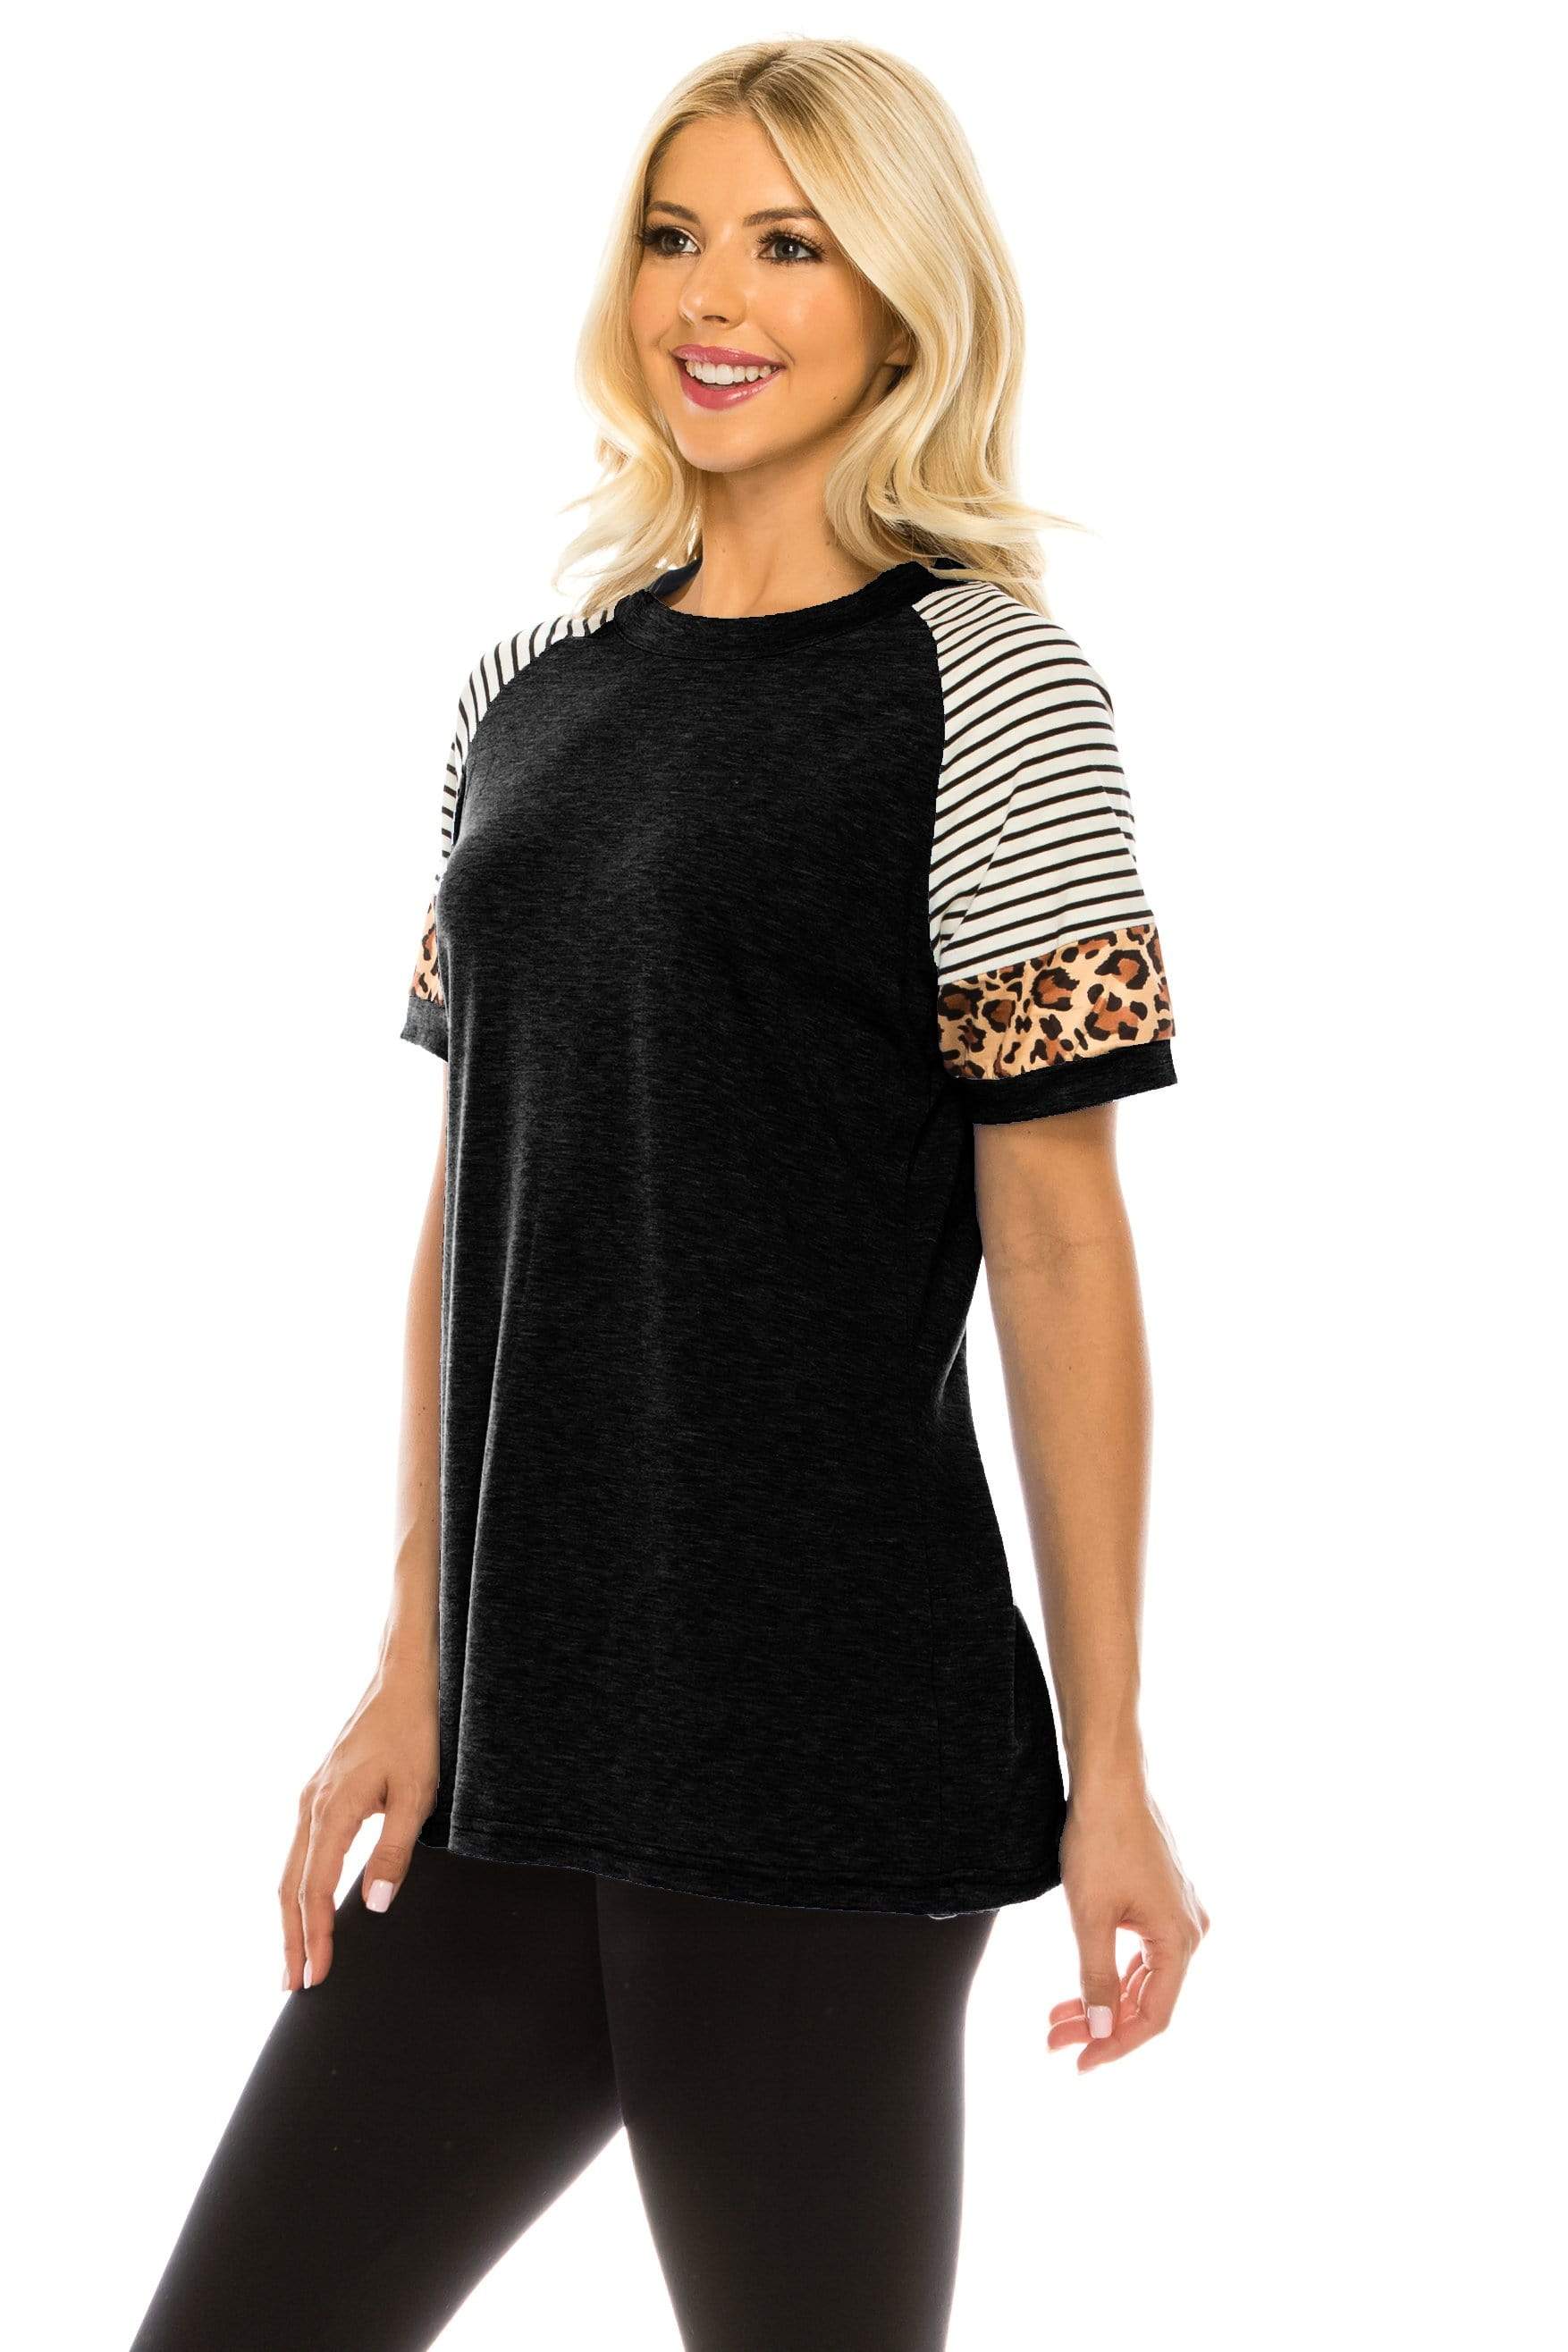 Haute Edition Women's Crew Neck Color Block Leopard Top. Plue Sizes Available DAILYHAUTE